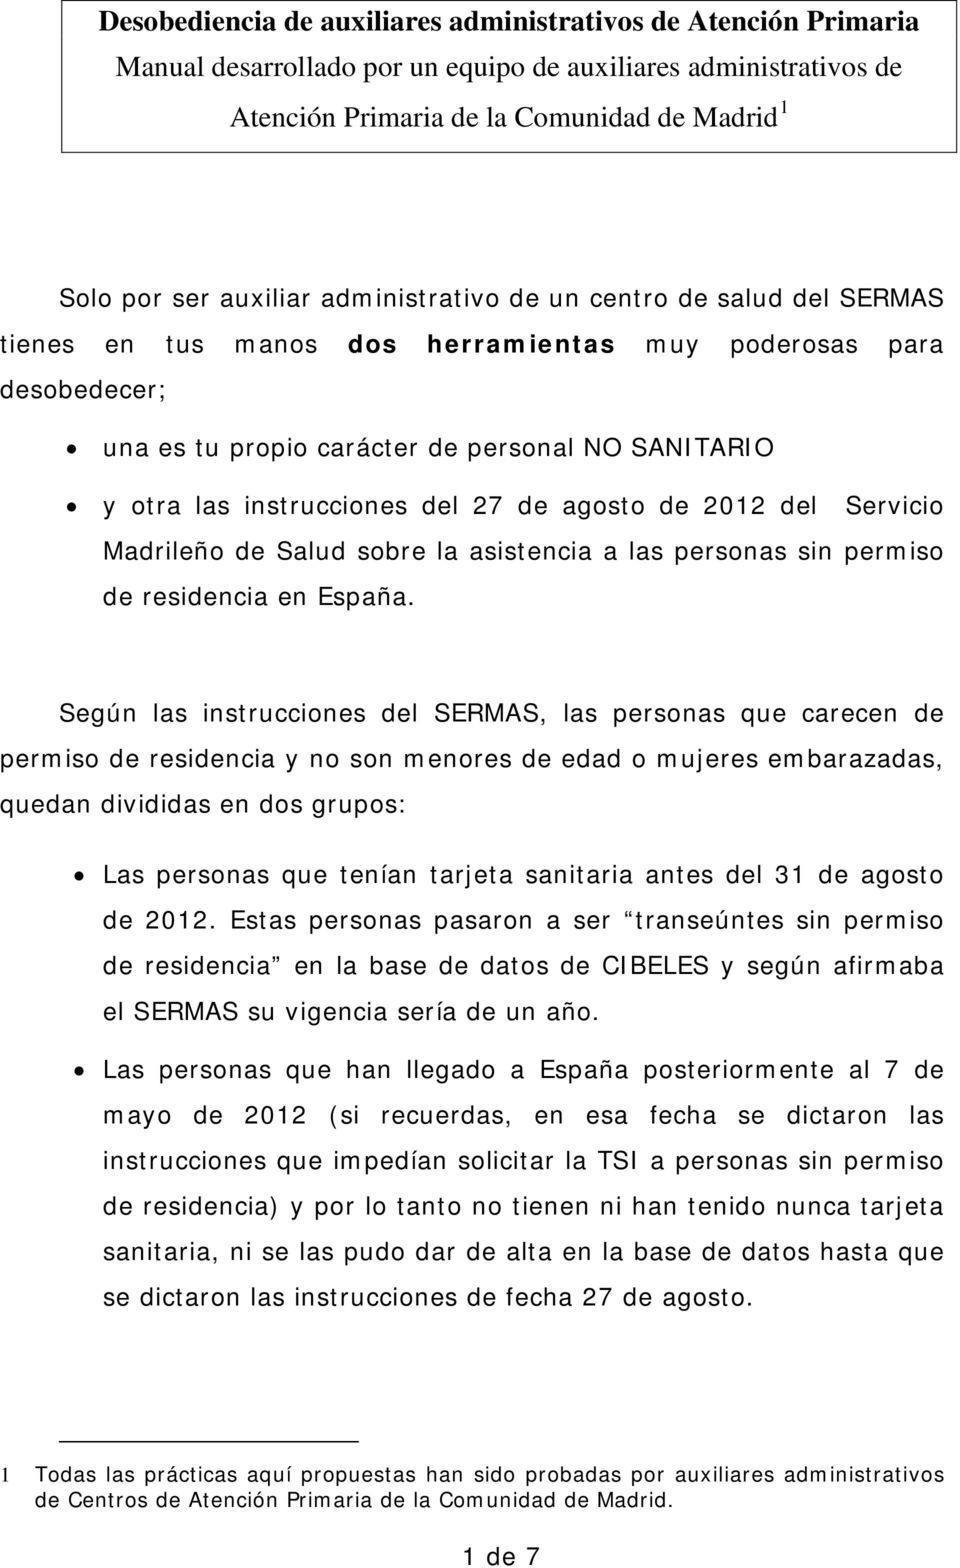 de agosto de 2012 del Servicio Madrileño de Salud sobre la asistencia a las personas sin permiso de residencia en España.